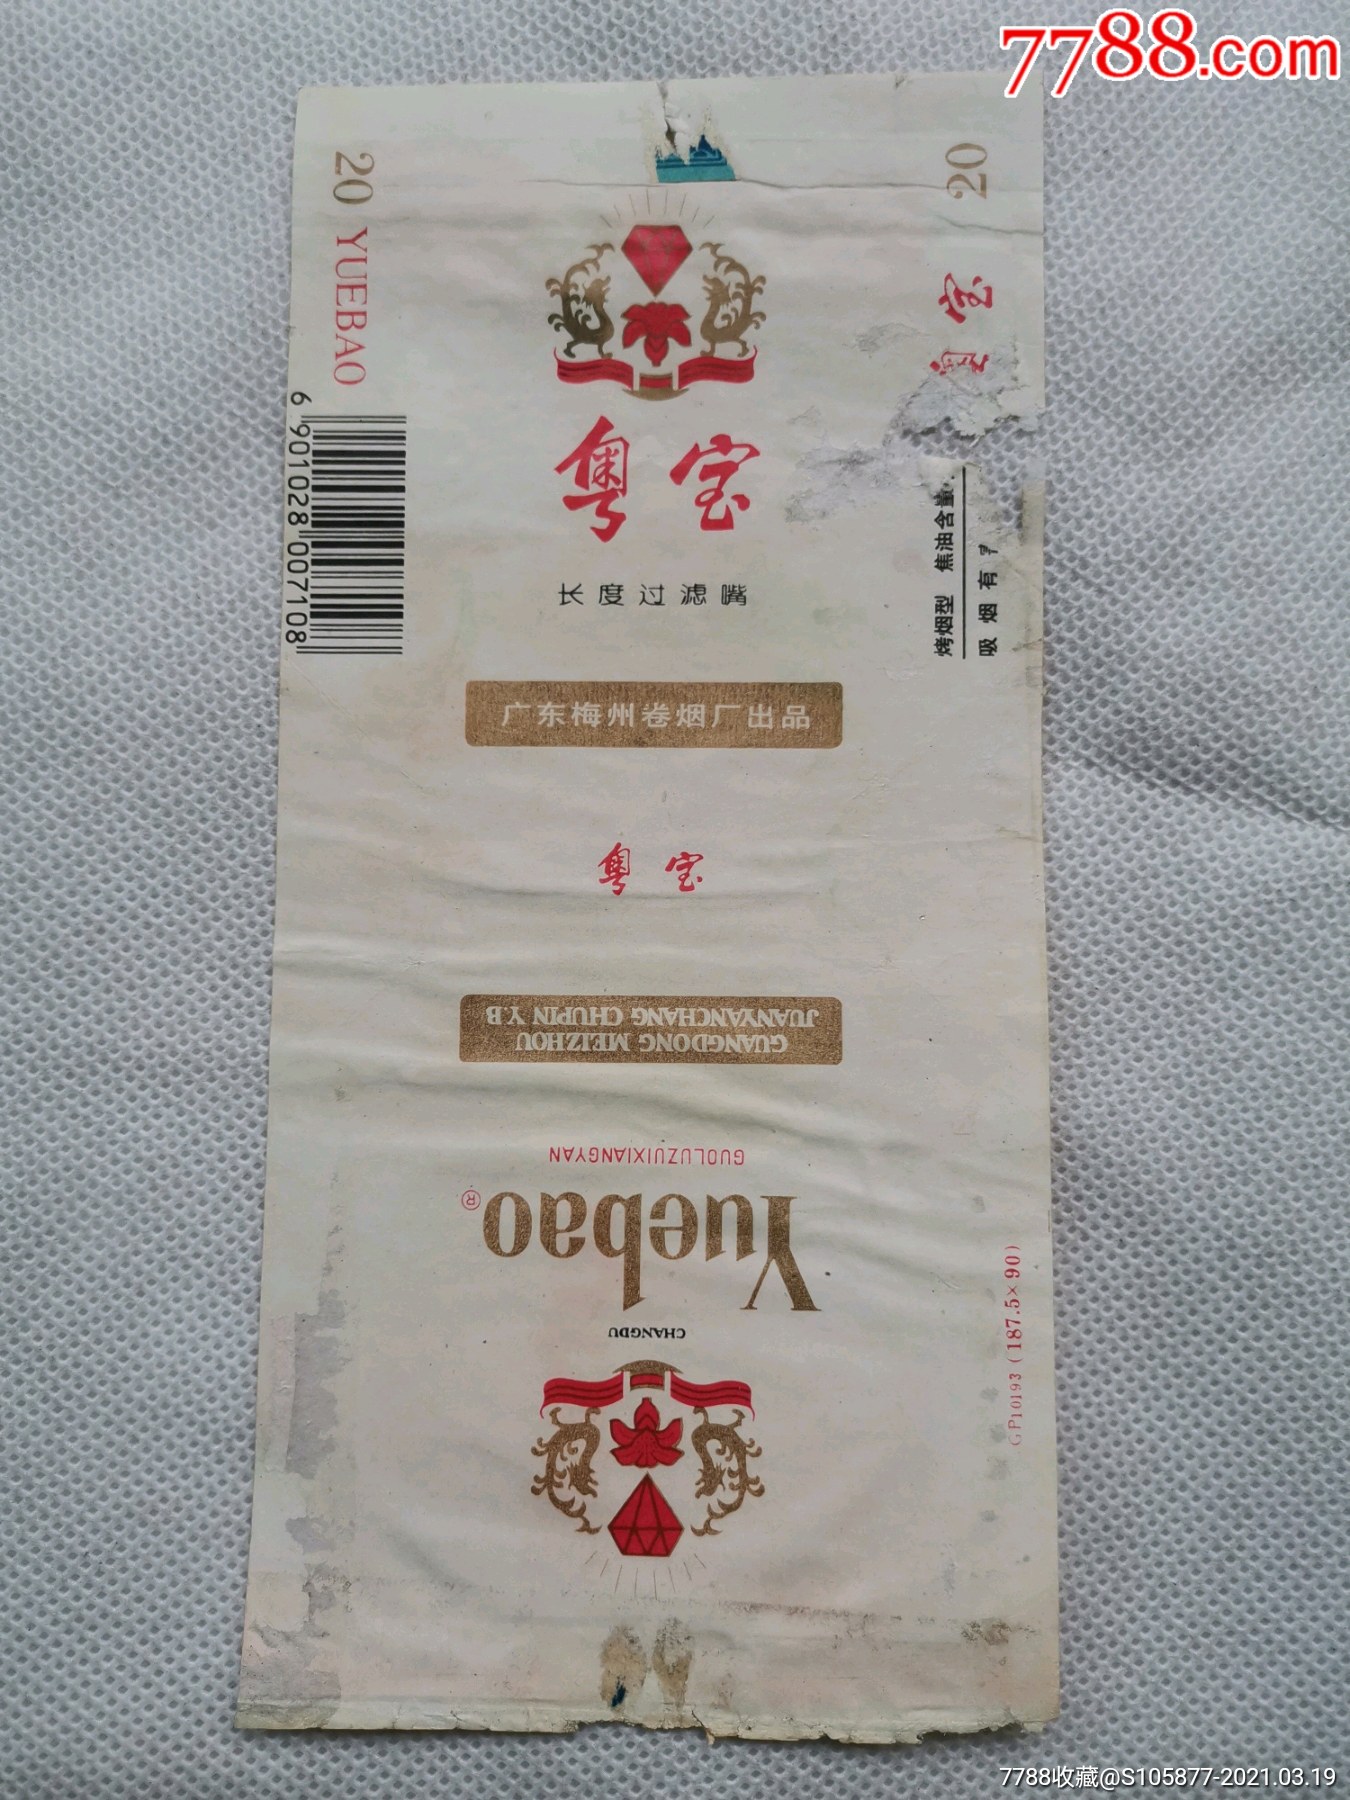 广东梅州卷烟厂出品的粤宝长度过滤嘴香烟烟标一张